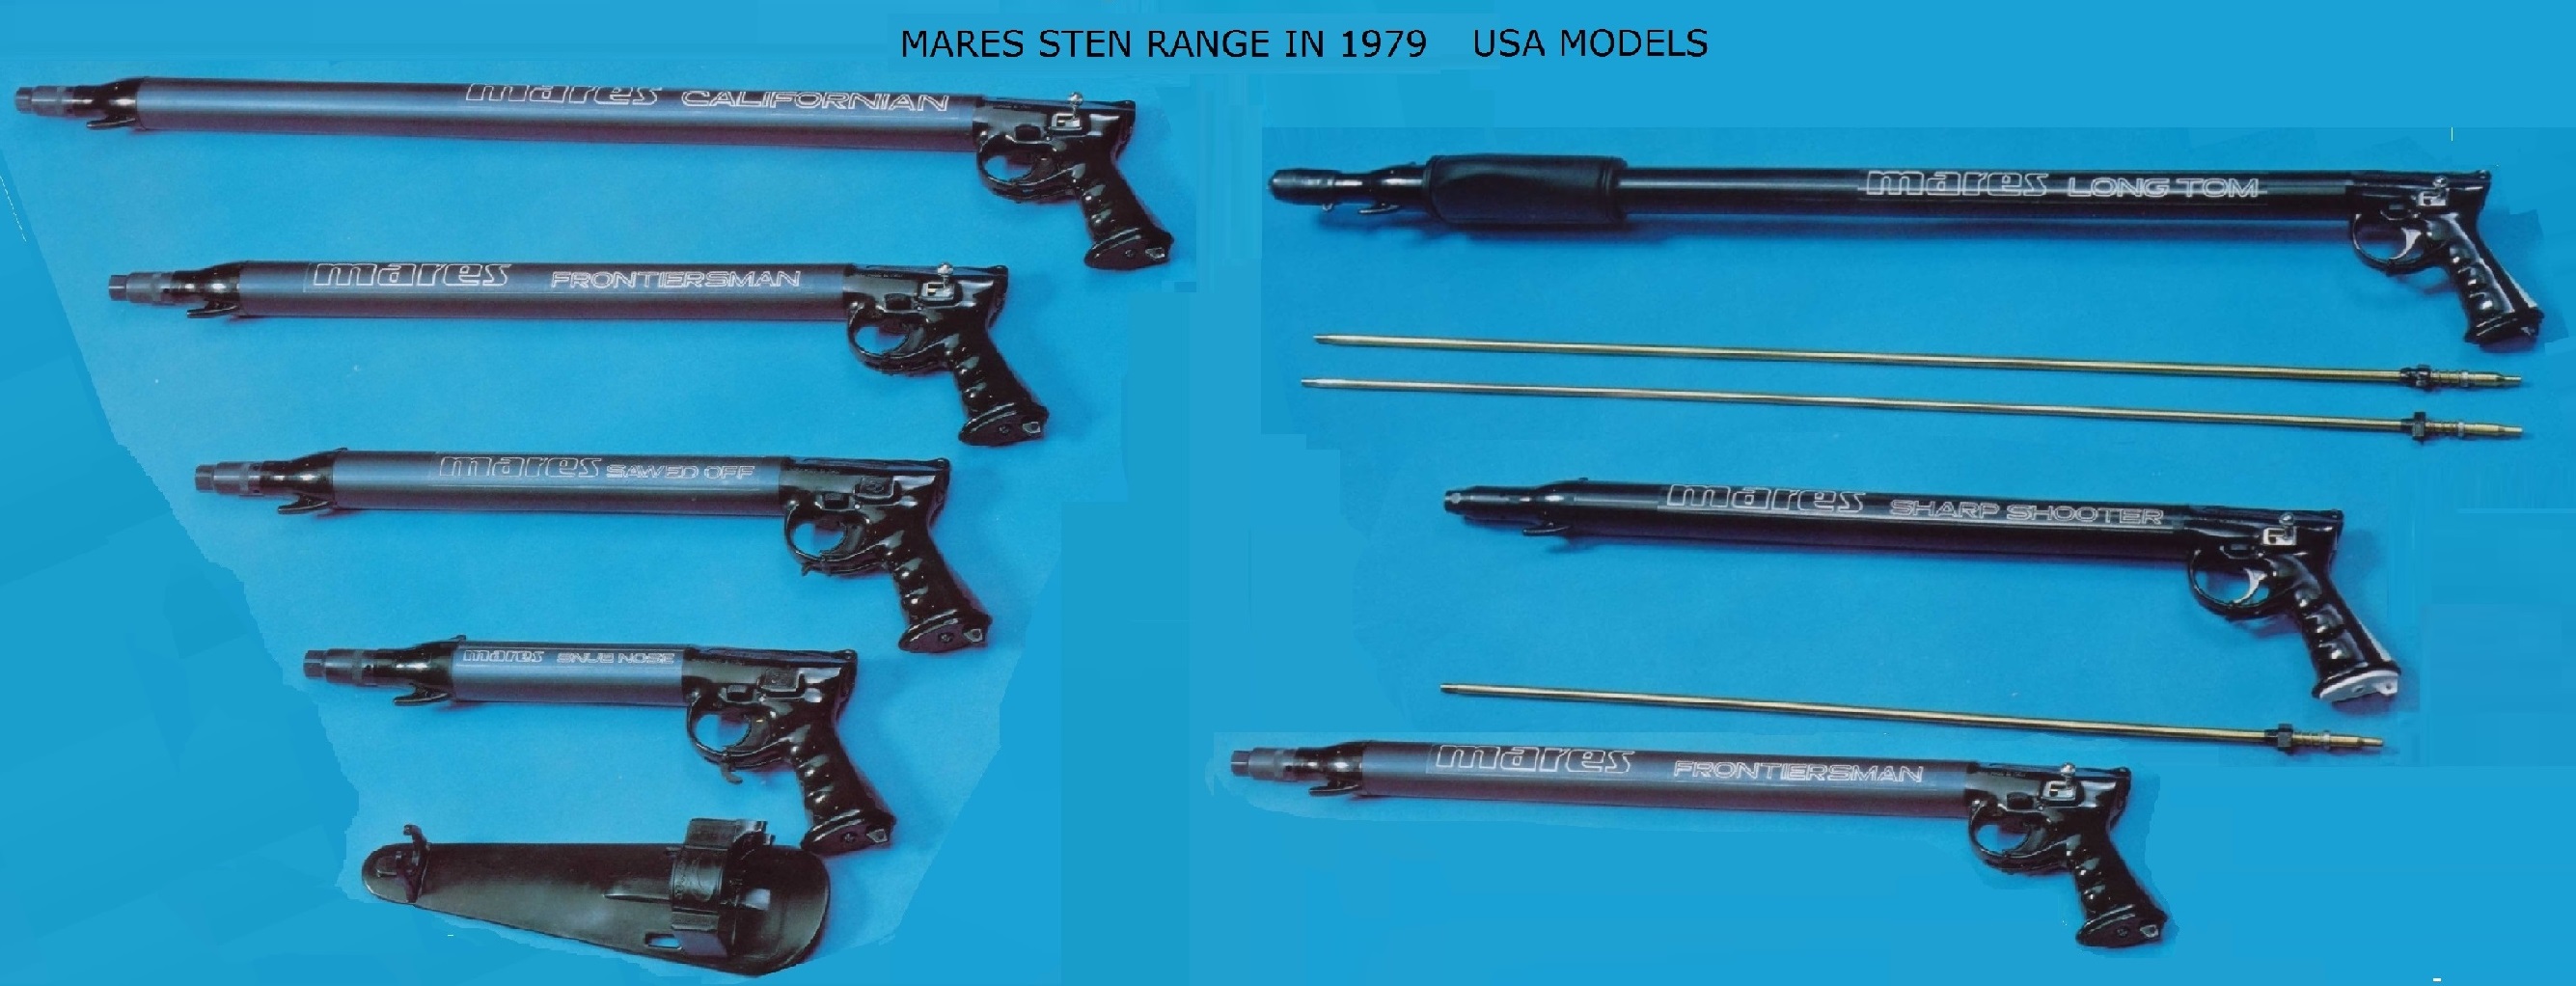 Mares Sten Range 1979 US Market R.jpg